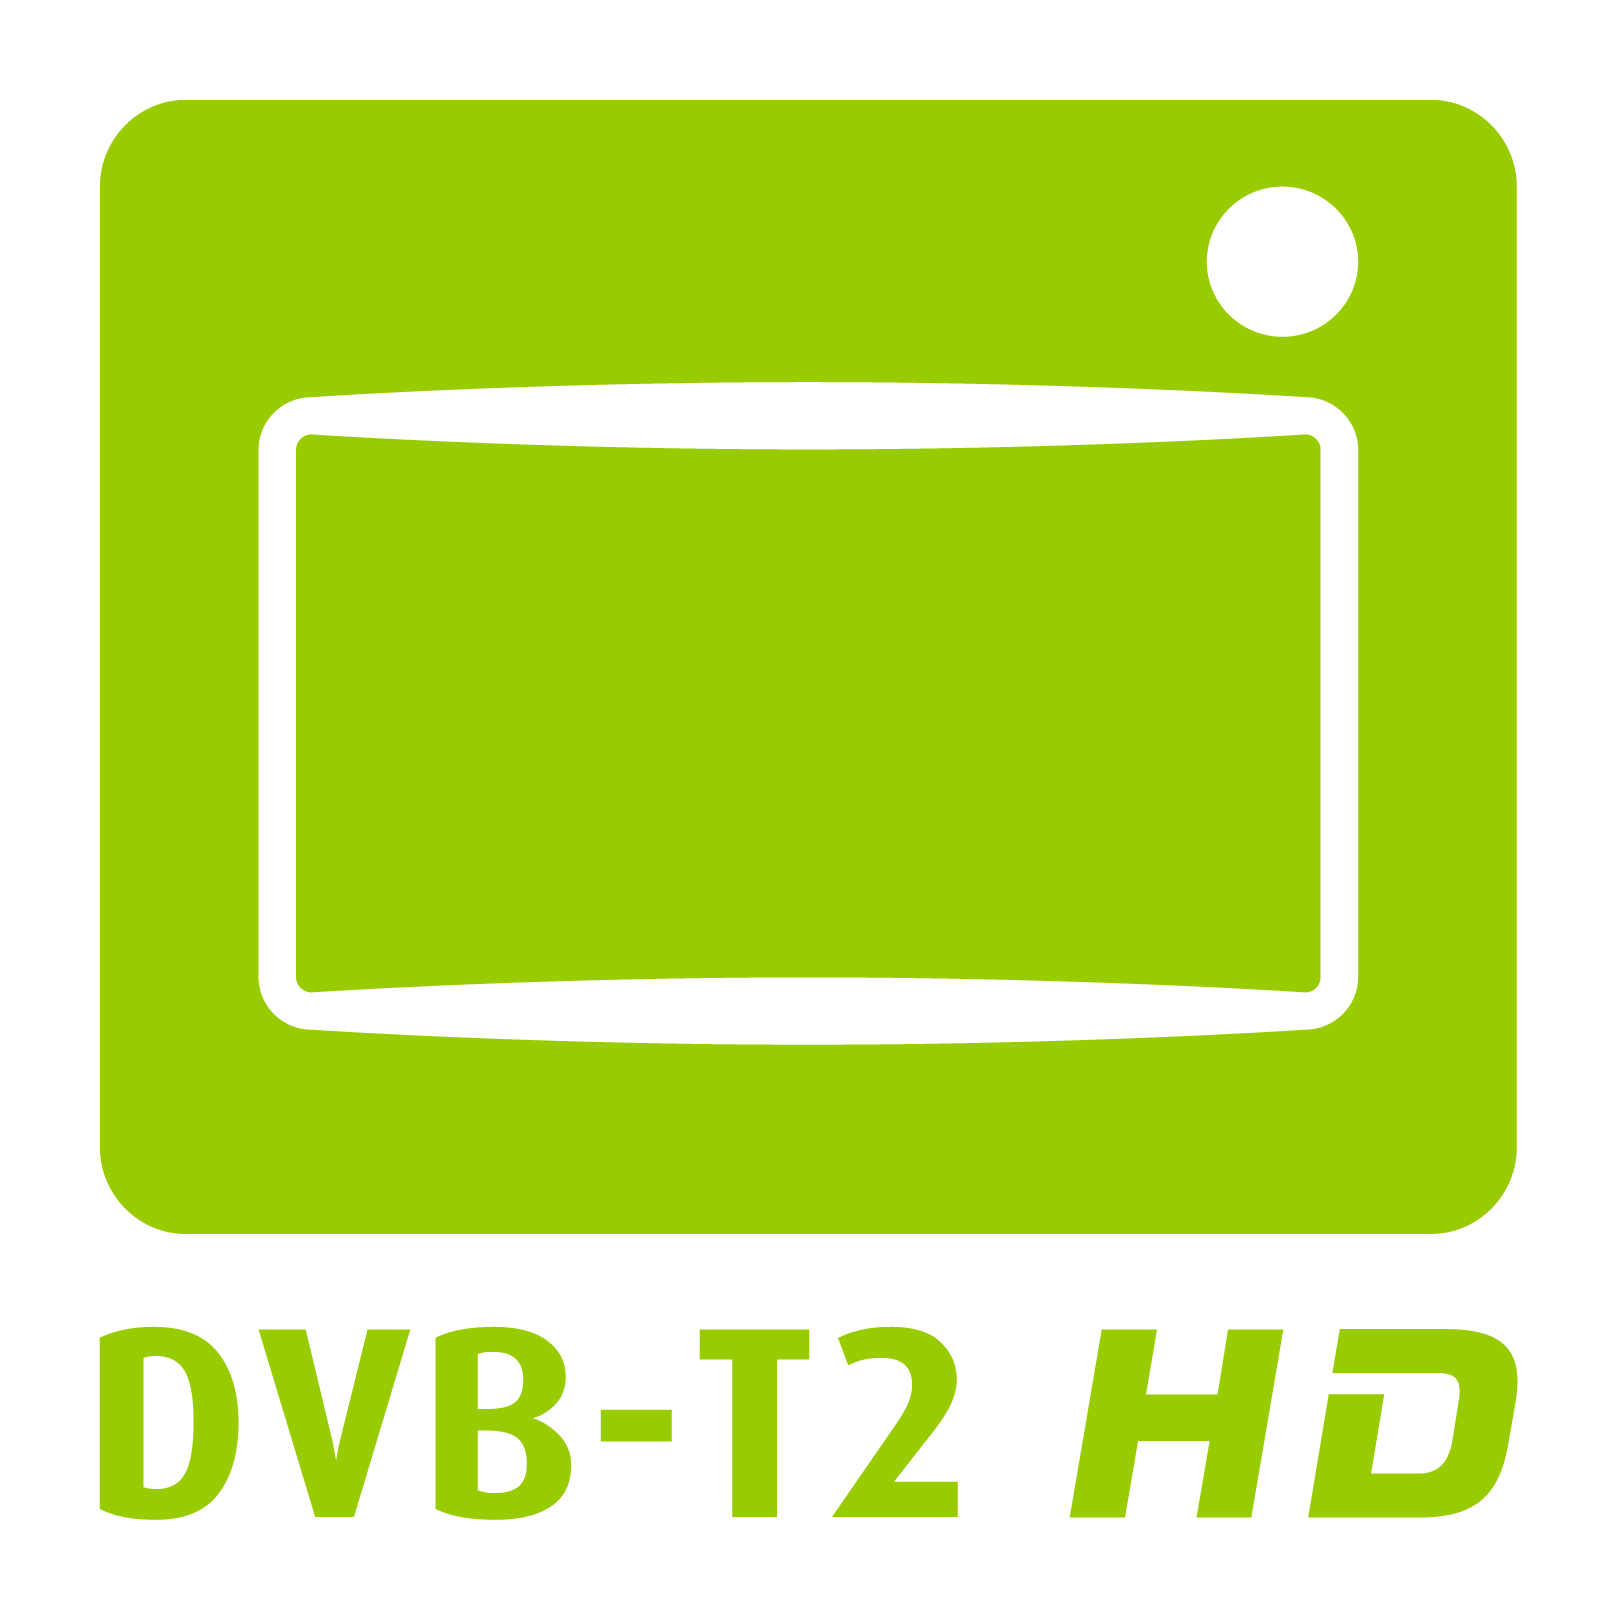 DVB-T2_HD_Logo